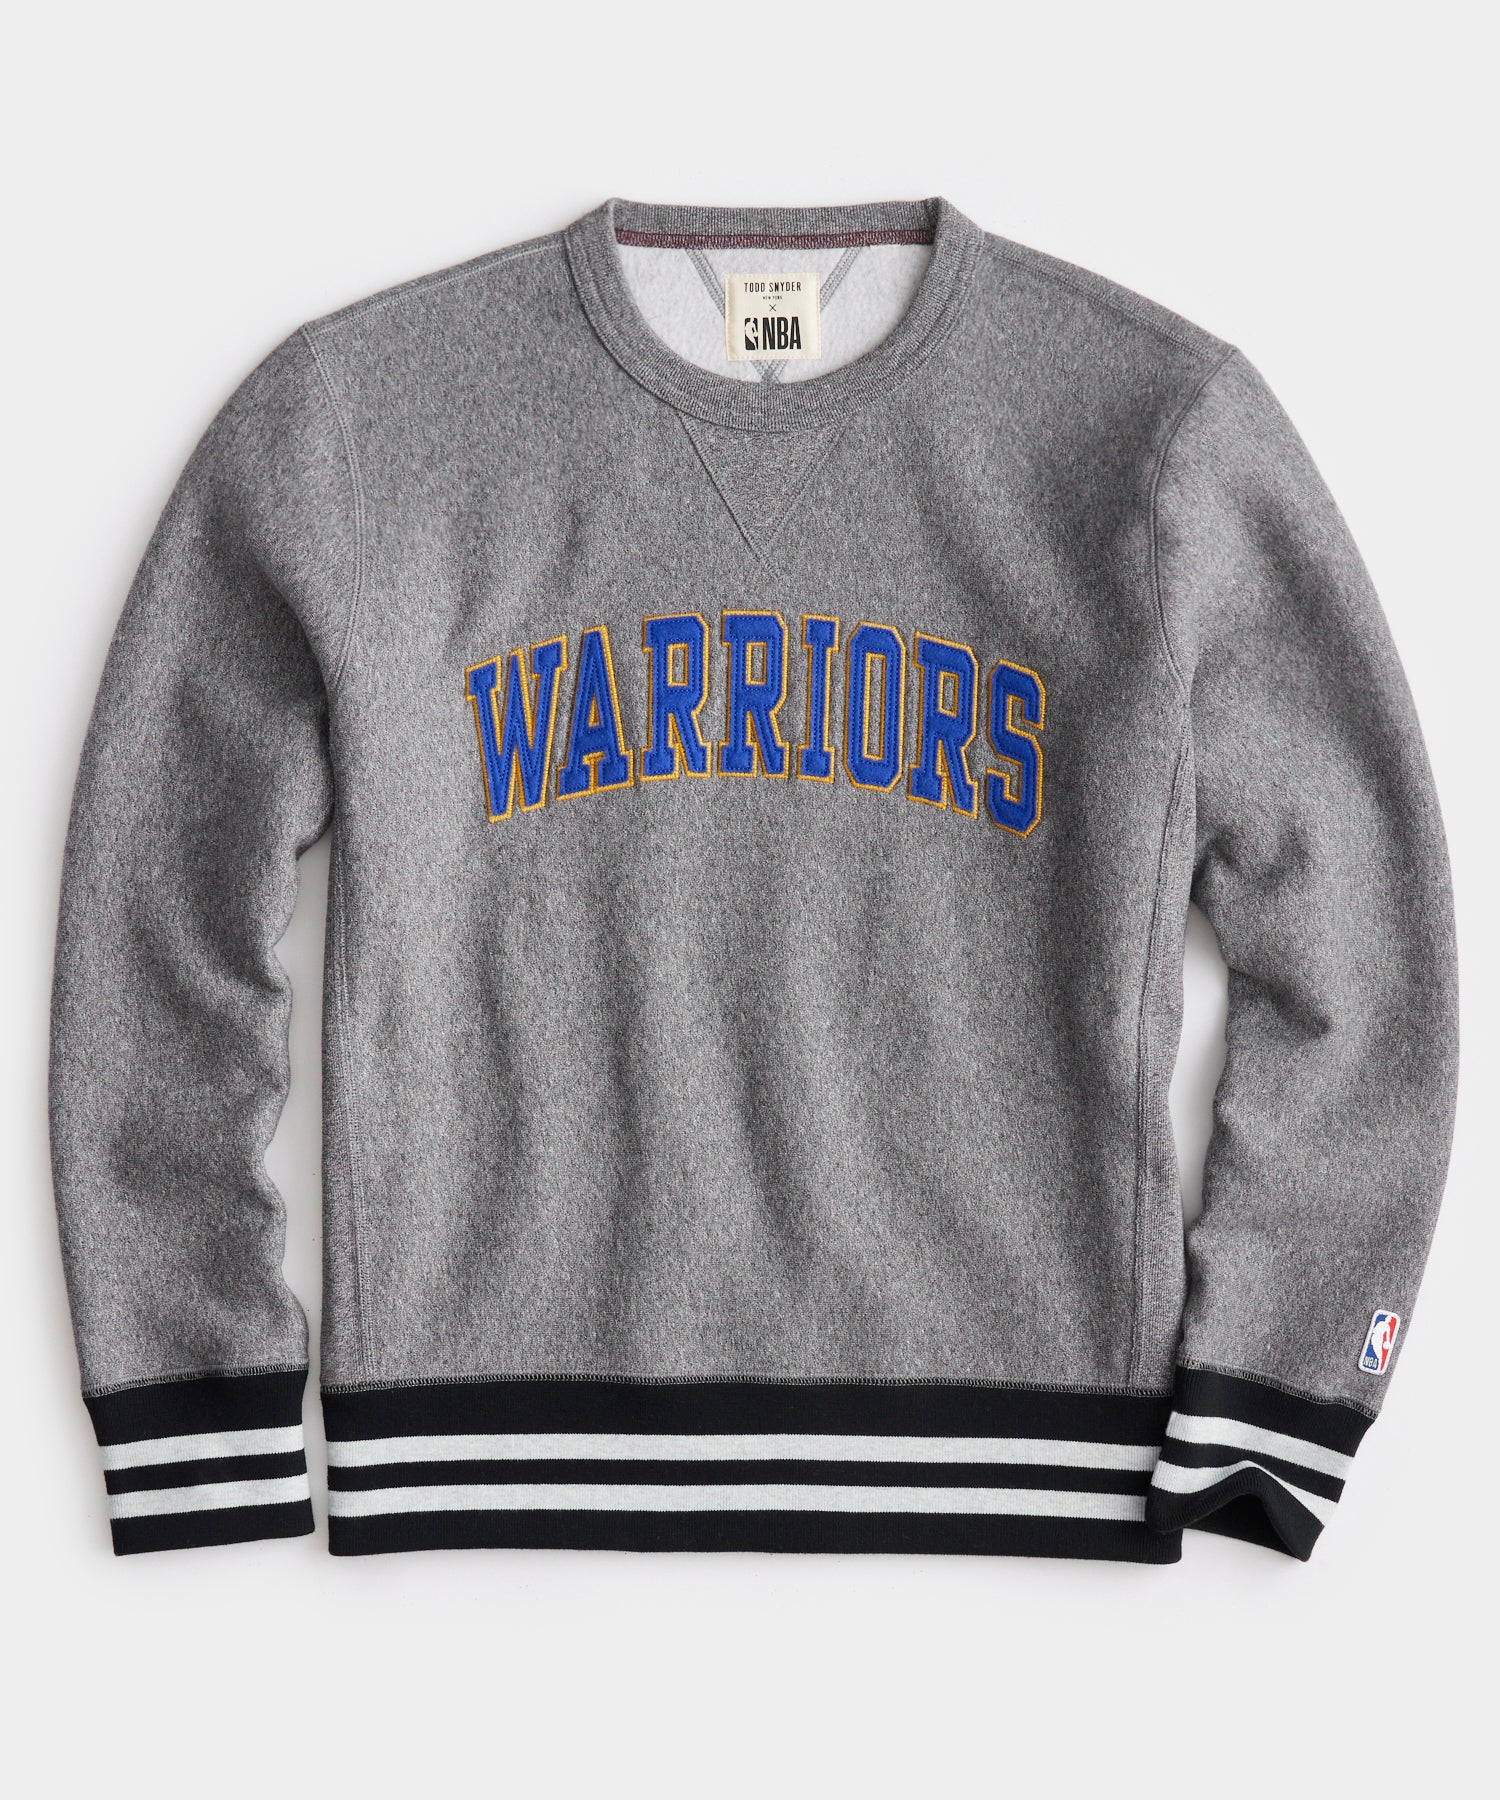 Golden State Warriors Mens Hoodies, Sweatshirts, Warriors Full Zip